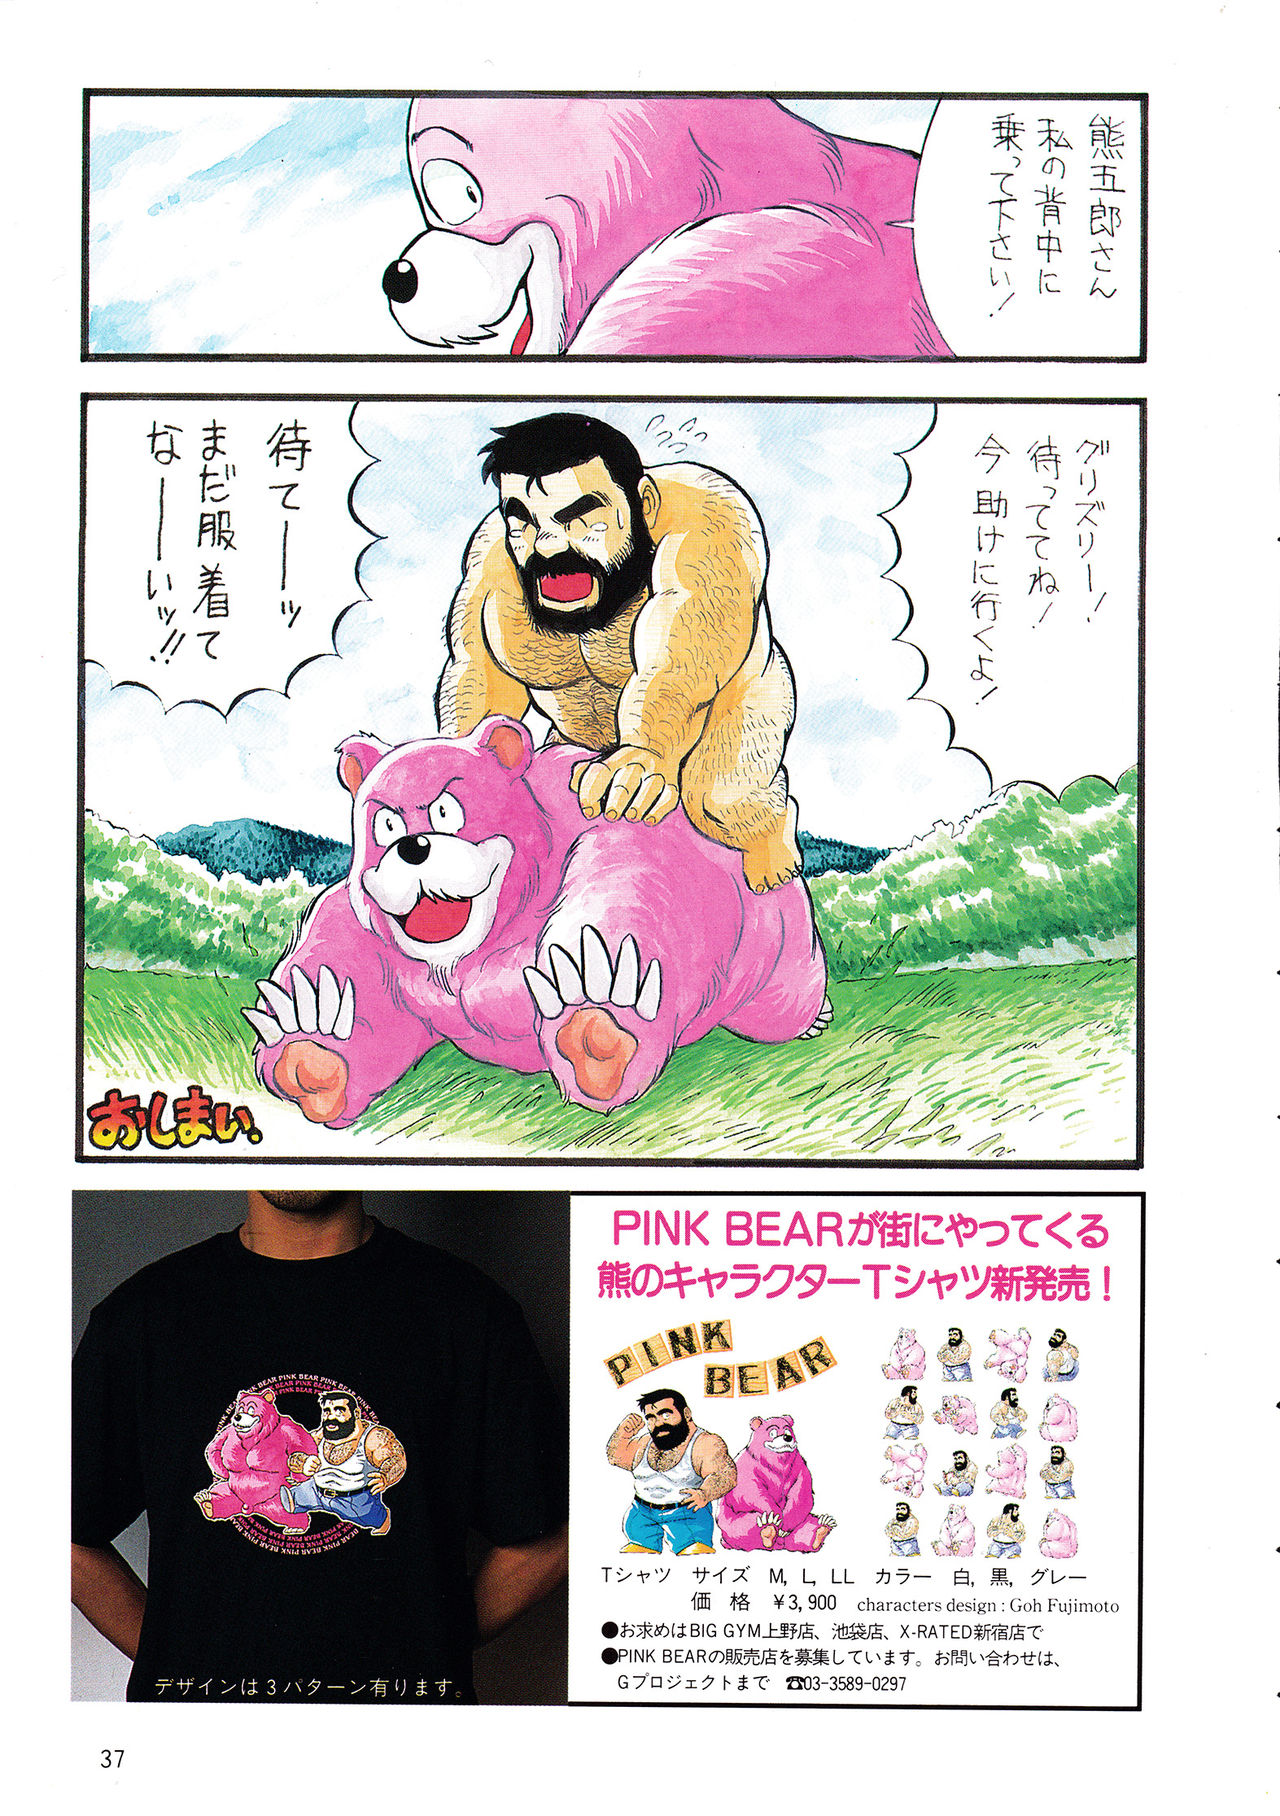 [藤本郷] ADVENTURE OF PINK BEAR (Gメン No.4 1995年11月25日)